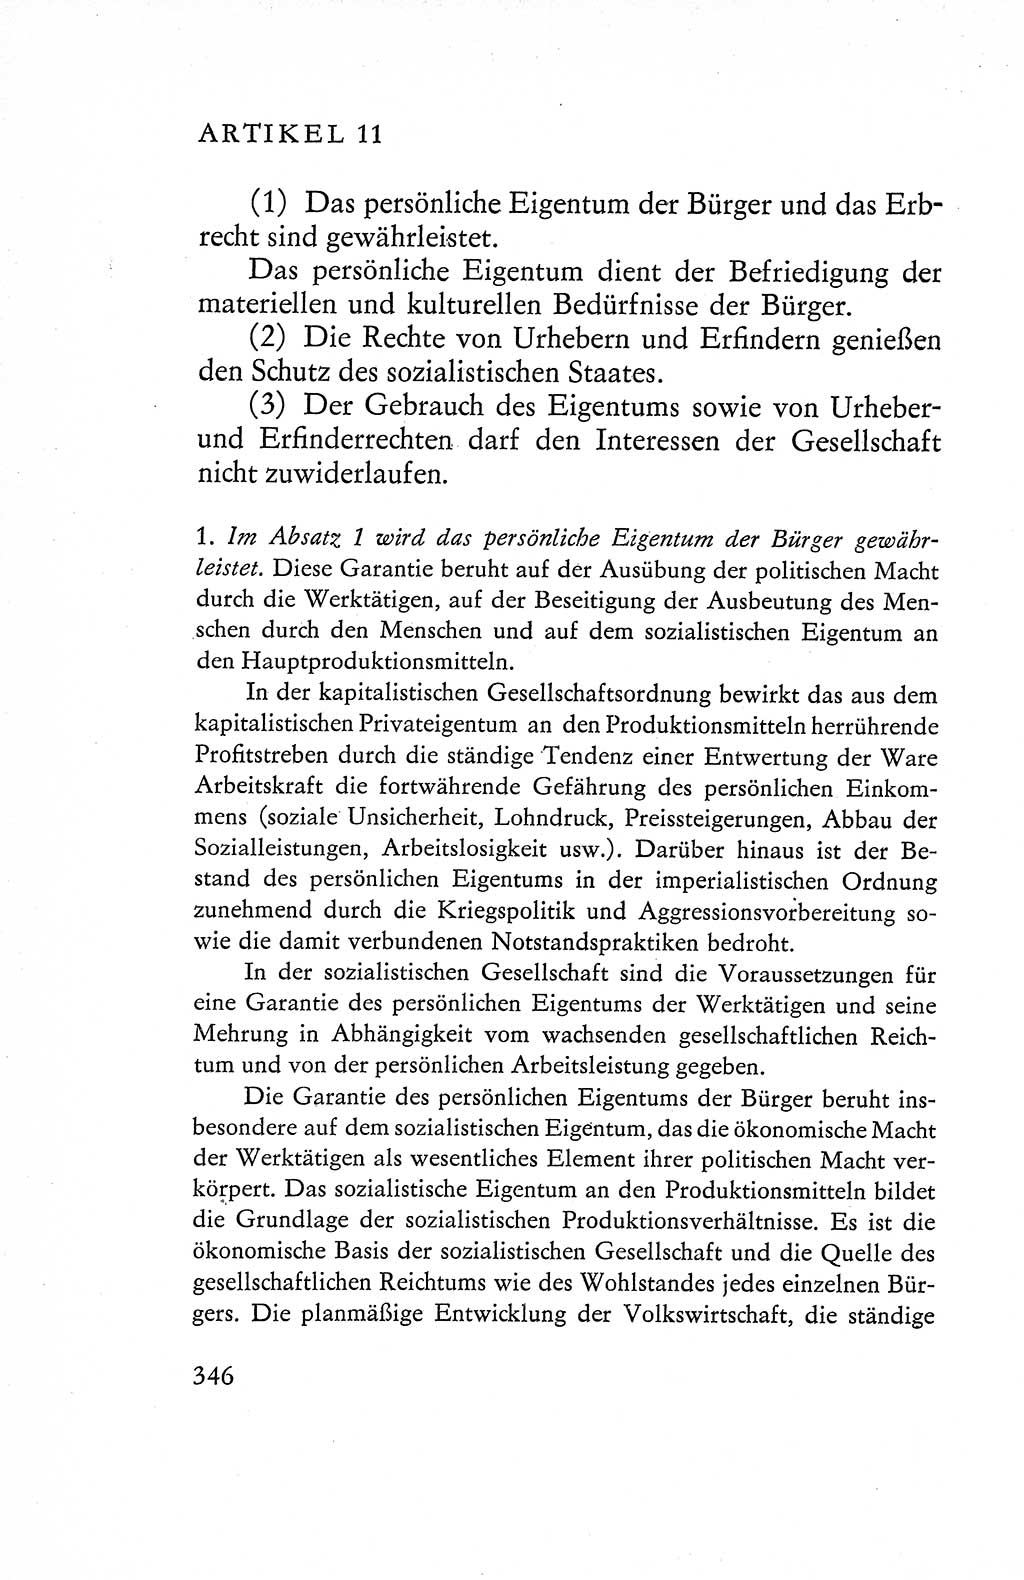 Verfassung der Deutschen Demokratischen Republik (DDR), Dokumente, Kommentar 1969, Band 1, Seite 346 (Verf. DDR Dok. Komm. 1969, Bd. 1, S. 346)